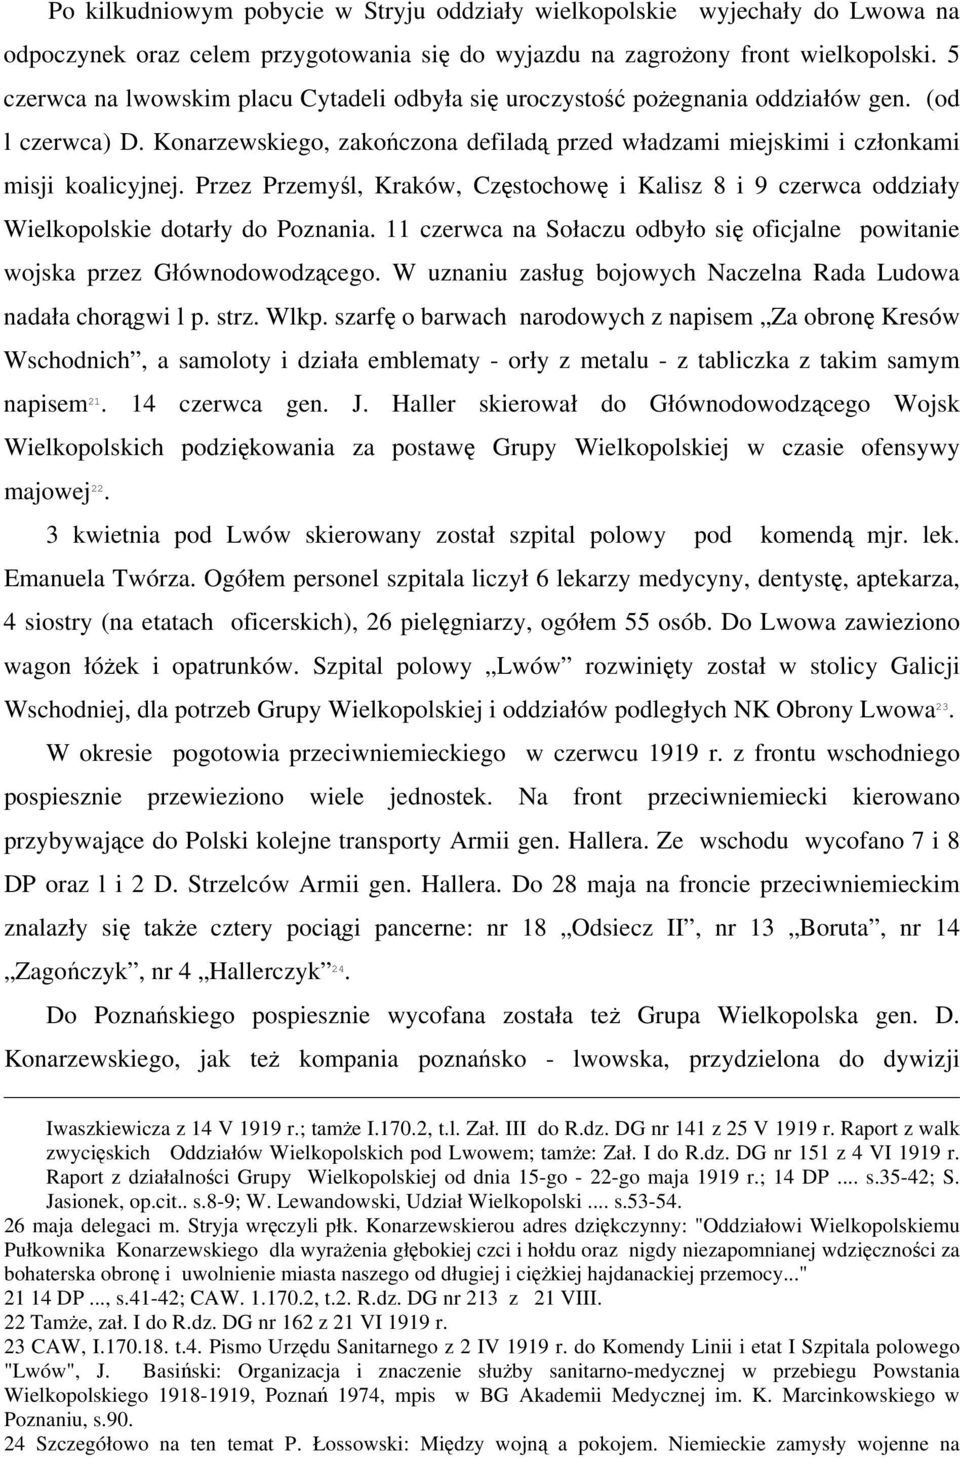 Przez Przemyśl, Kraków, Częstochowę i Kalisz 8 i 9 czerwca oddziały Wielkopolskie dotarły do Poznania. 11 czerwca na Sołaczu odbyło się oficjalne powitanie wojska przez Głównodowodzącego.